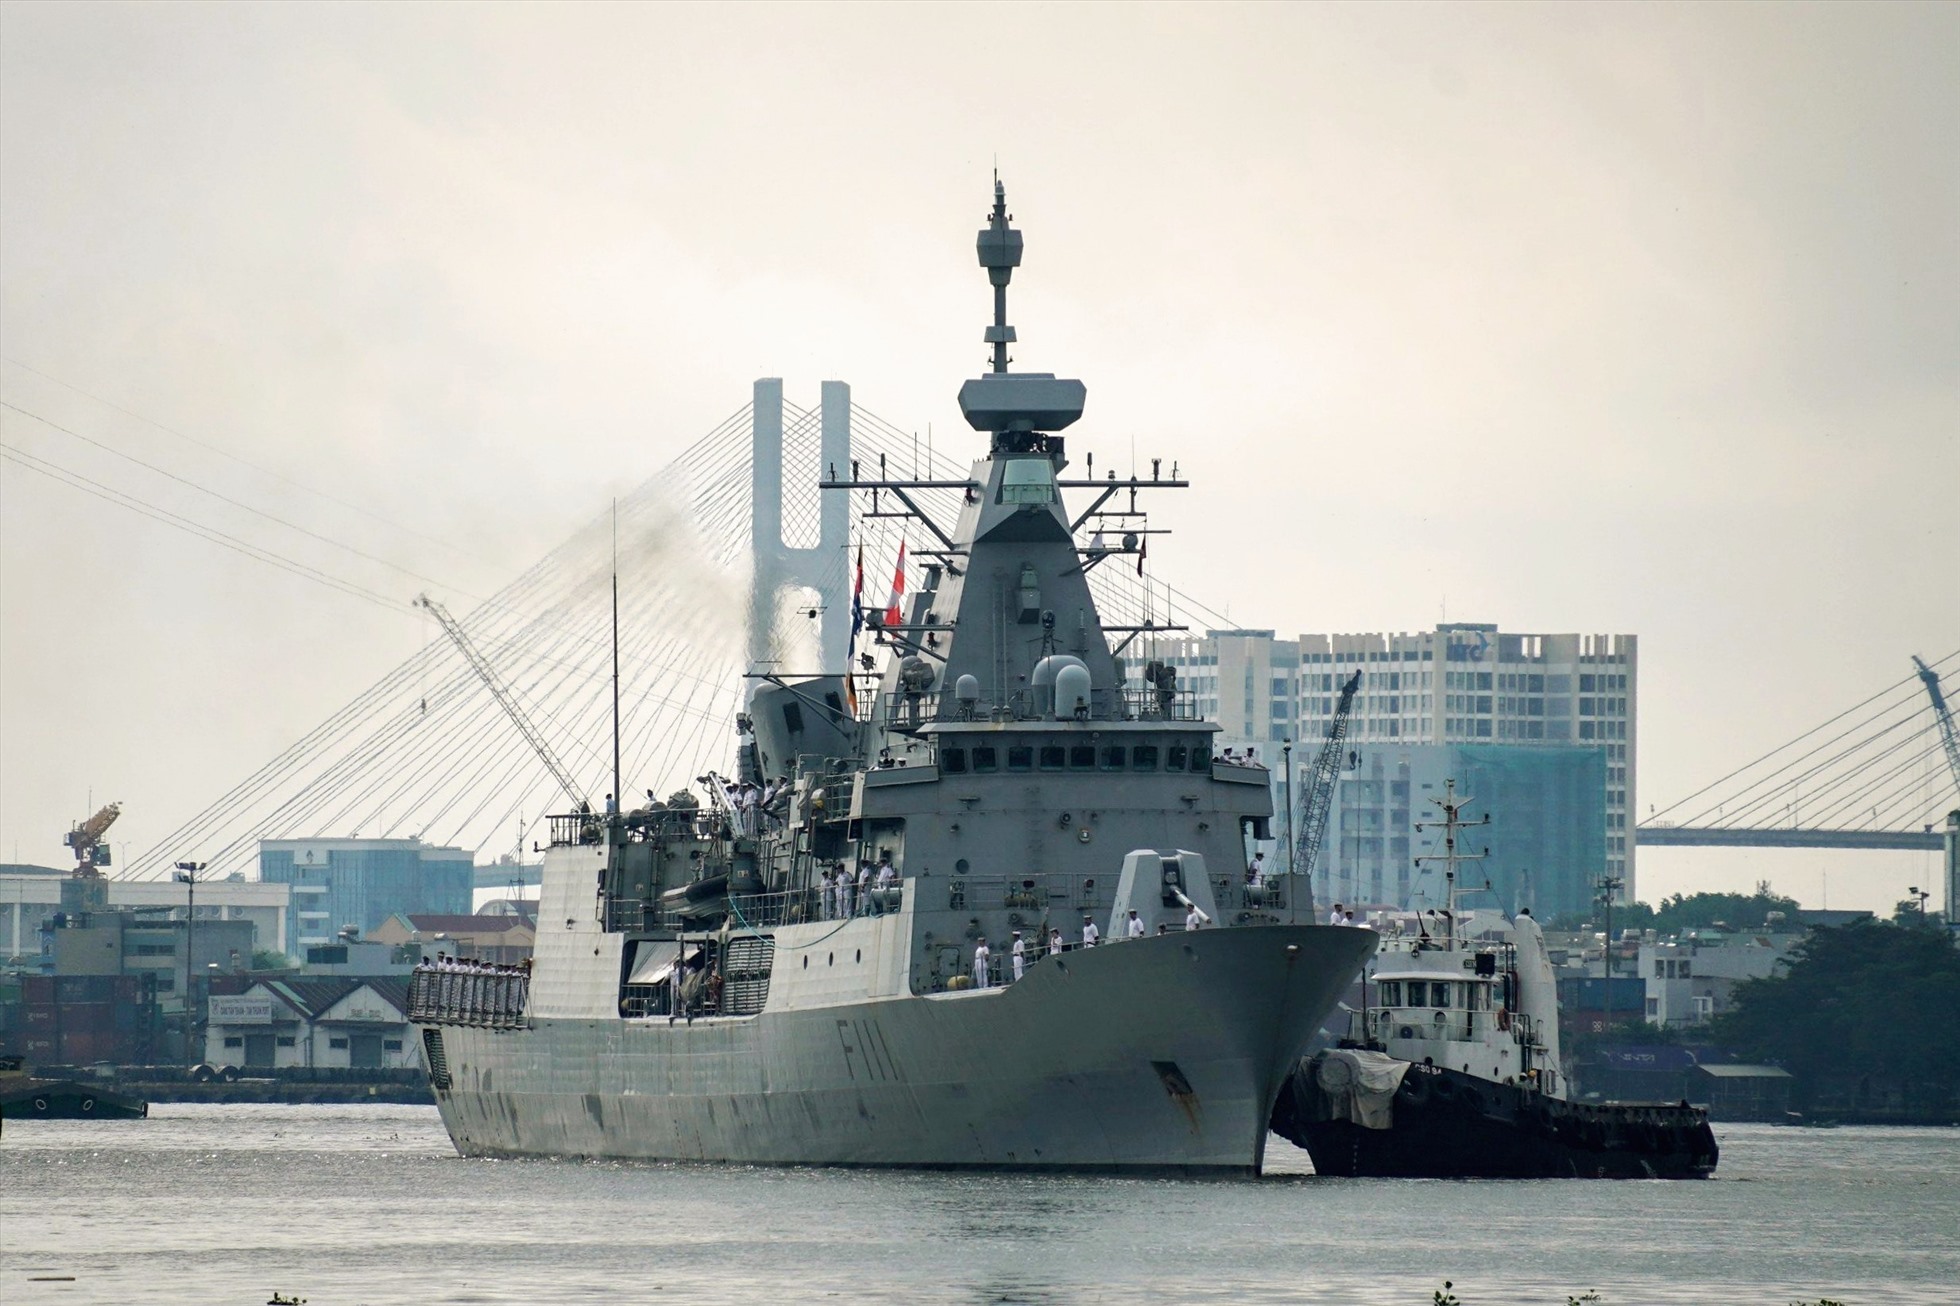 Ngày 24.9, hai tàu Hải quân Hoàng gia New Zealand HMNZS Te Mana và HMNZS Aotearoa cập cảng Bến Nhà Rồng, TPHCM, bắt đầu chuyến thăm từ ngày 24 đến 25.9.